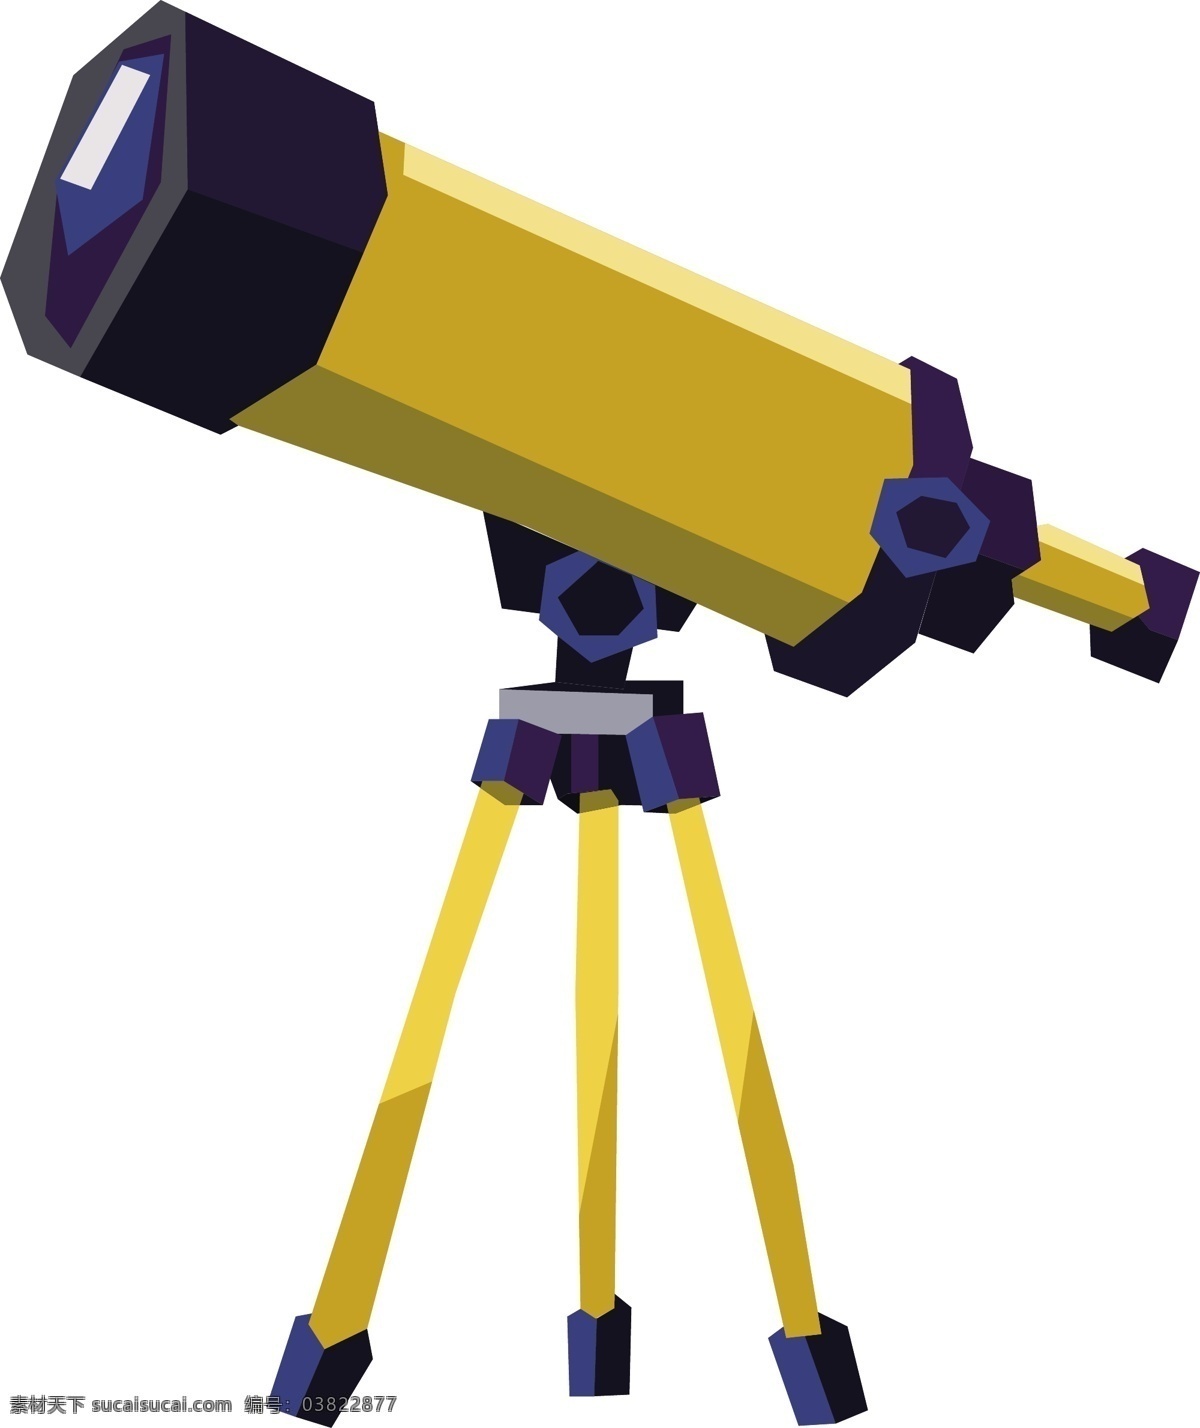 野营 望远镜 几何 商用 元素 野营工具 卡通 矢量